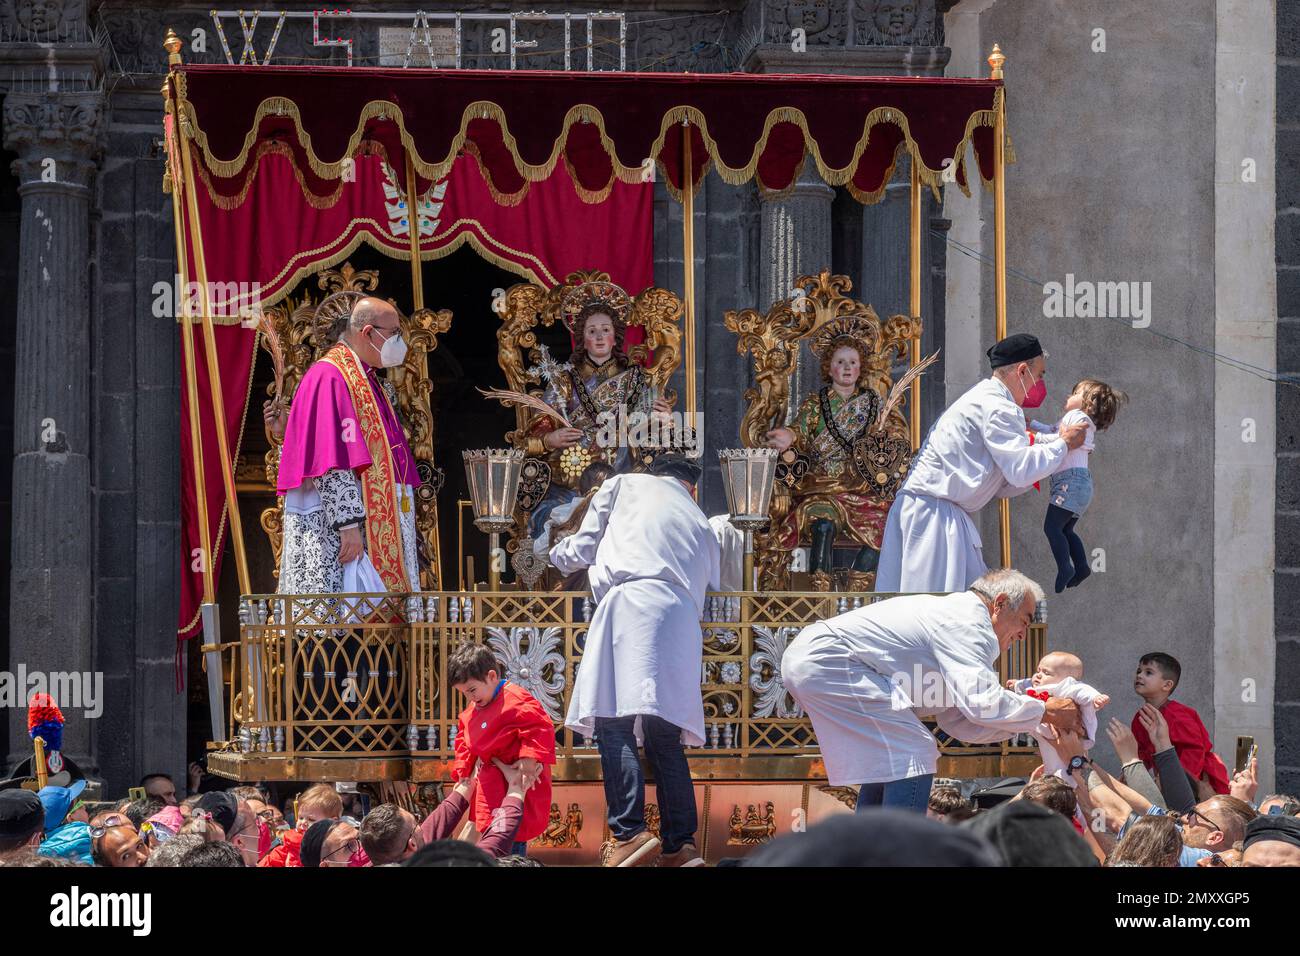 La Festa di Sant'Alfio a lieu début mai dans la ville sicilienne de Trecastagni, près de Catane. Les enfants sont remis au prêtre pour être bénis et embrasser les images des trois saints patrons, les frères romains martyrisés Alfio, Filadelfo et Cirino Banque D'Images